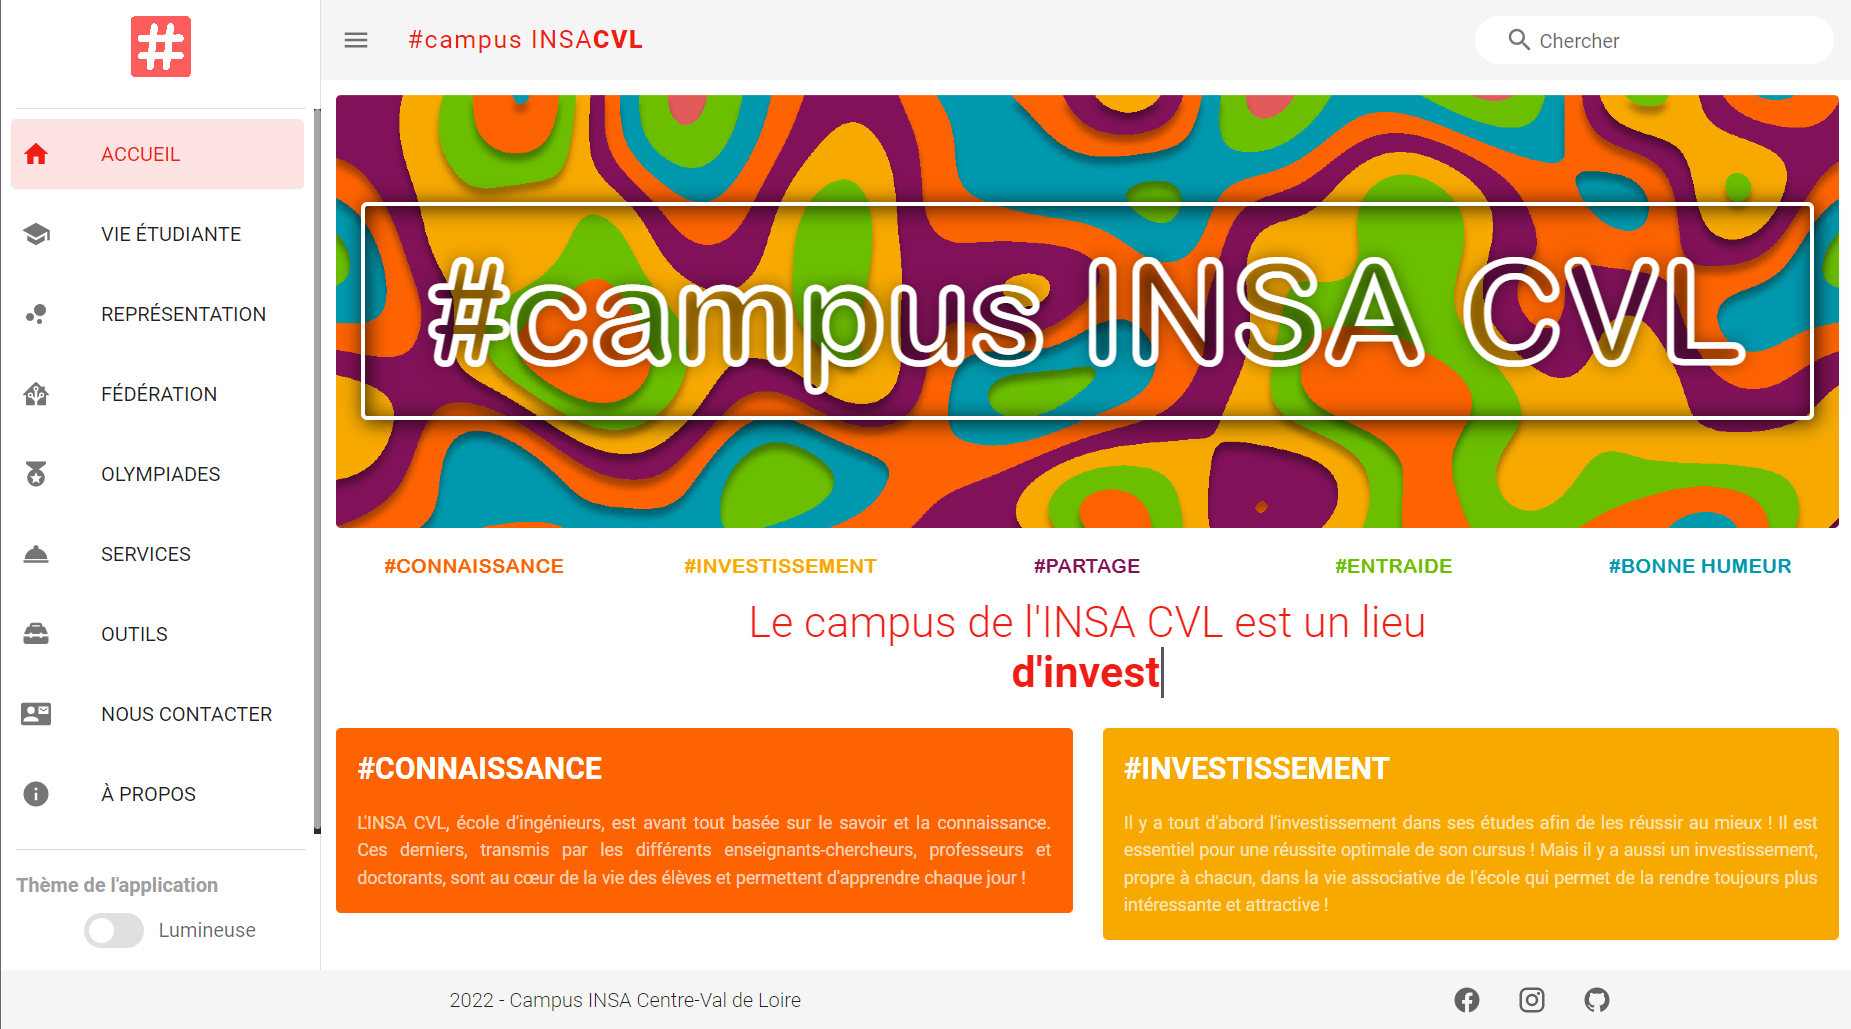 Capture d'écran du nouveau site campus. On peut y voir un titre "#campus INSA CVL".